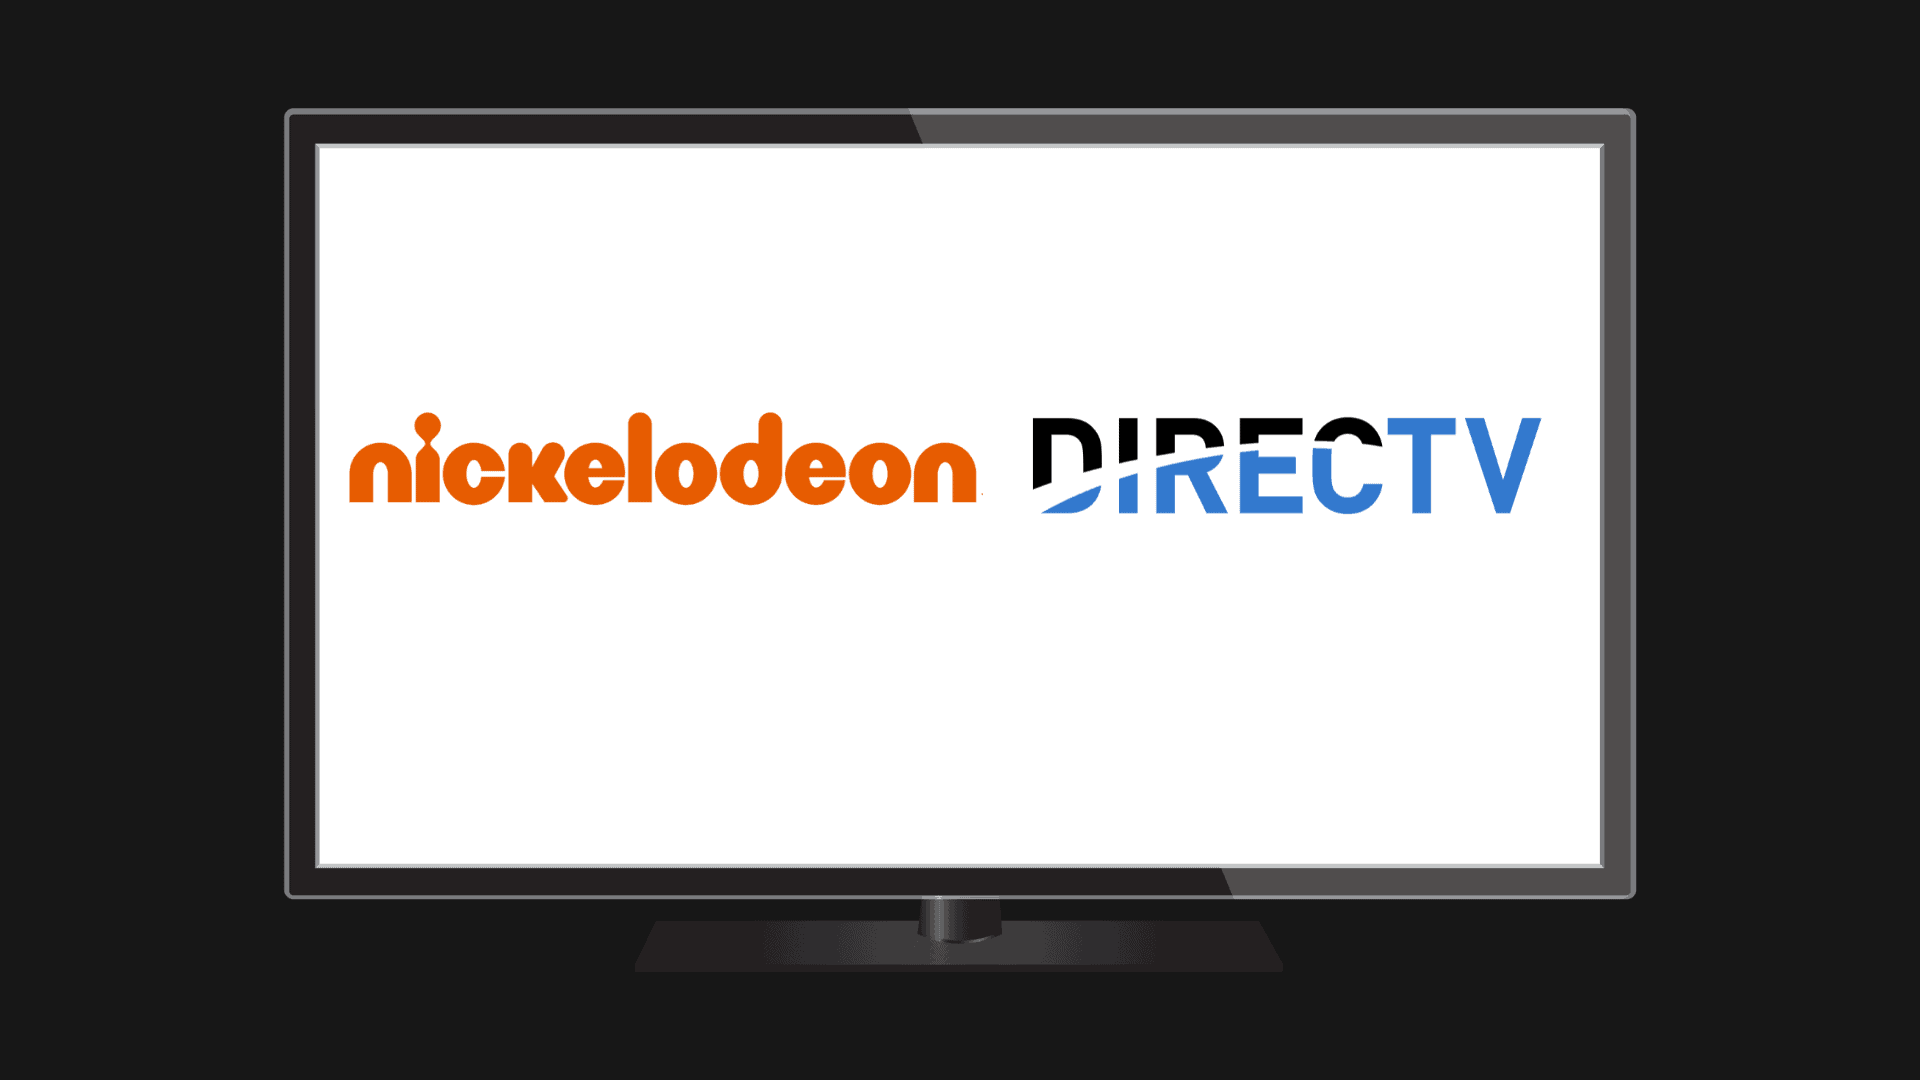 Nickelodeon logo next to DirecTV logo.